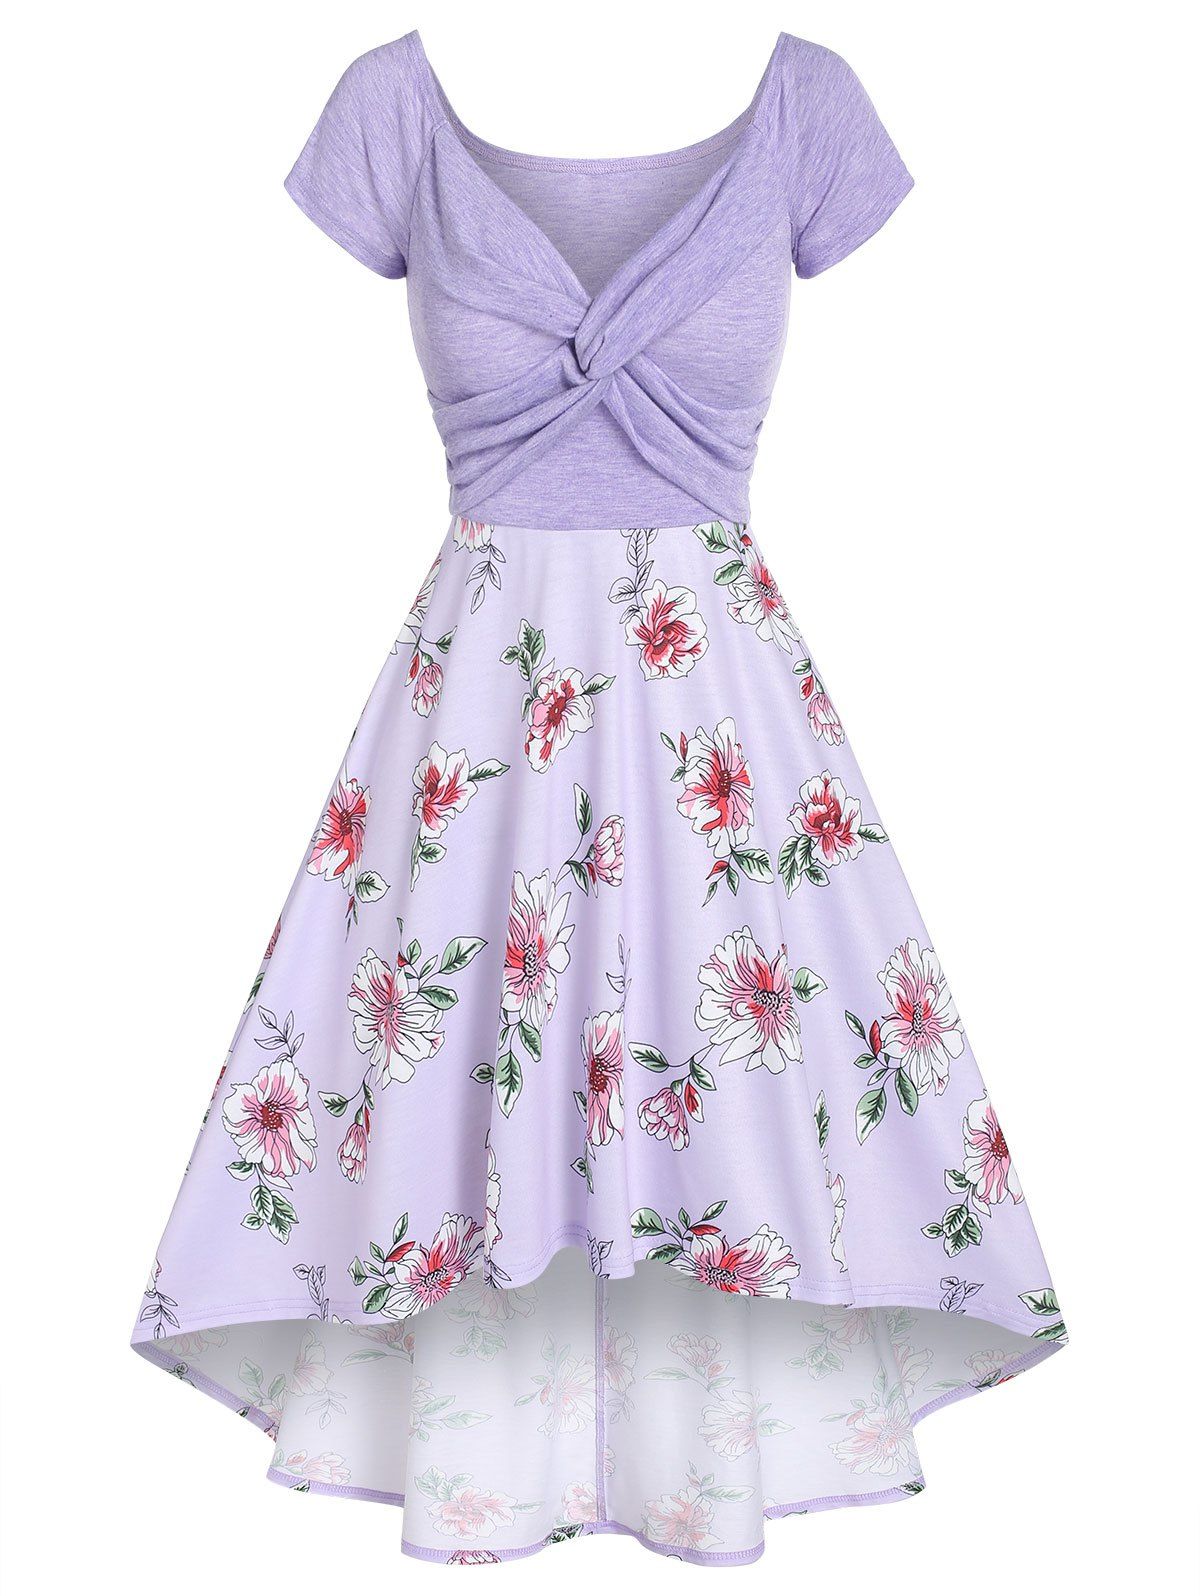 Flower Print Garden Party Dress Summer A Line Dress Front Twist High Low Dress - LIGHT PURPLE XXL